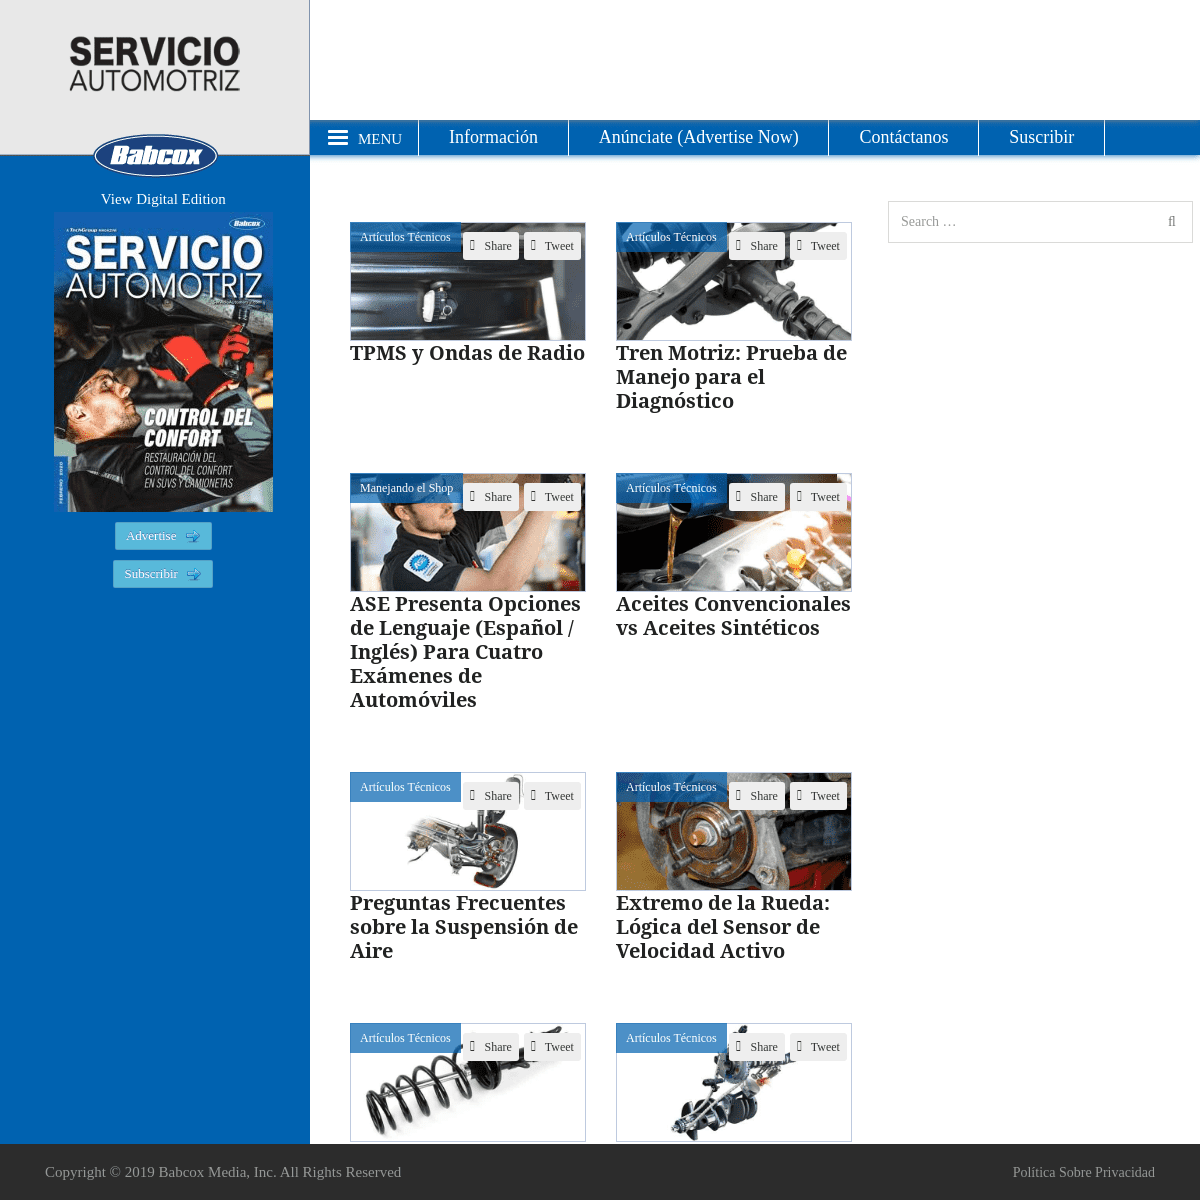 A complete backup of servicioautomotriz.com